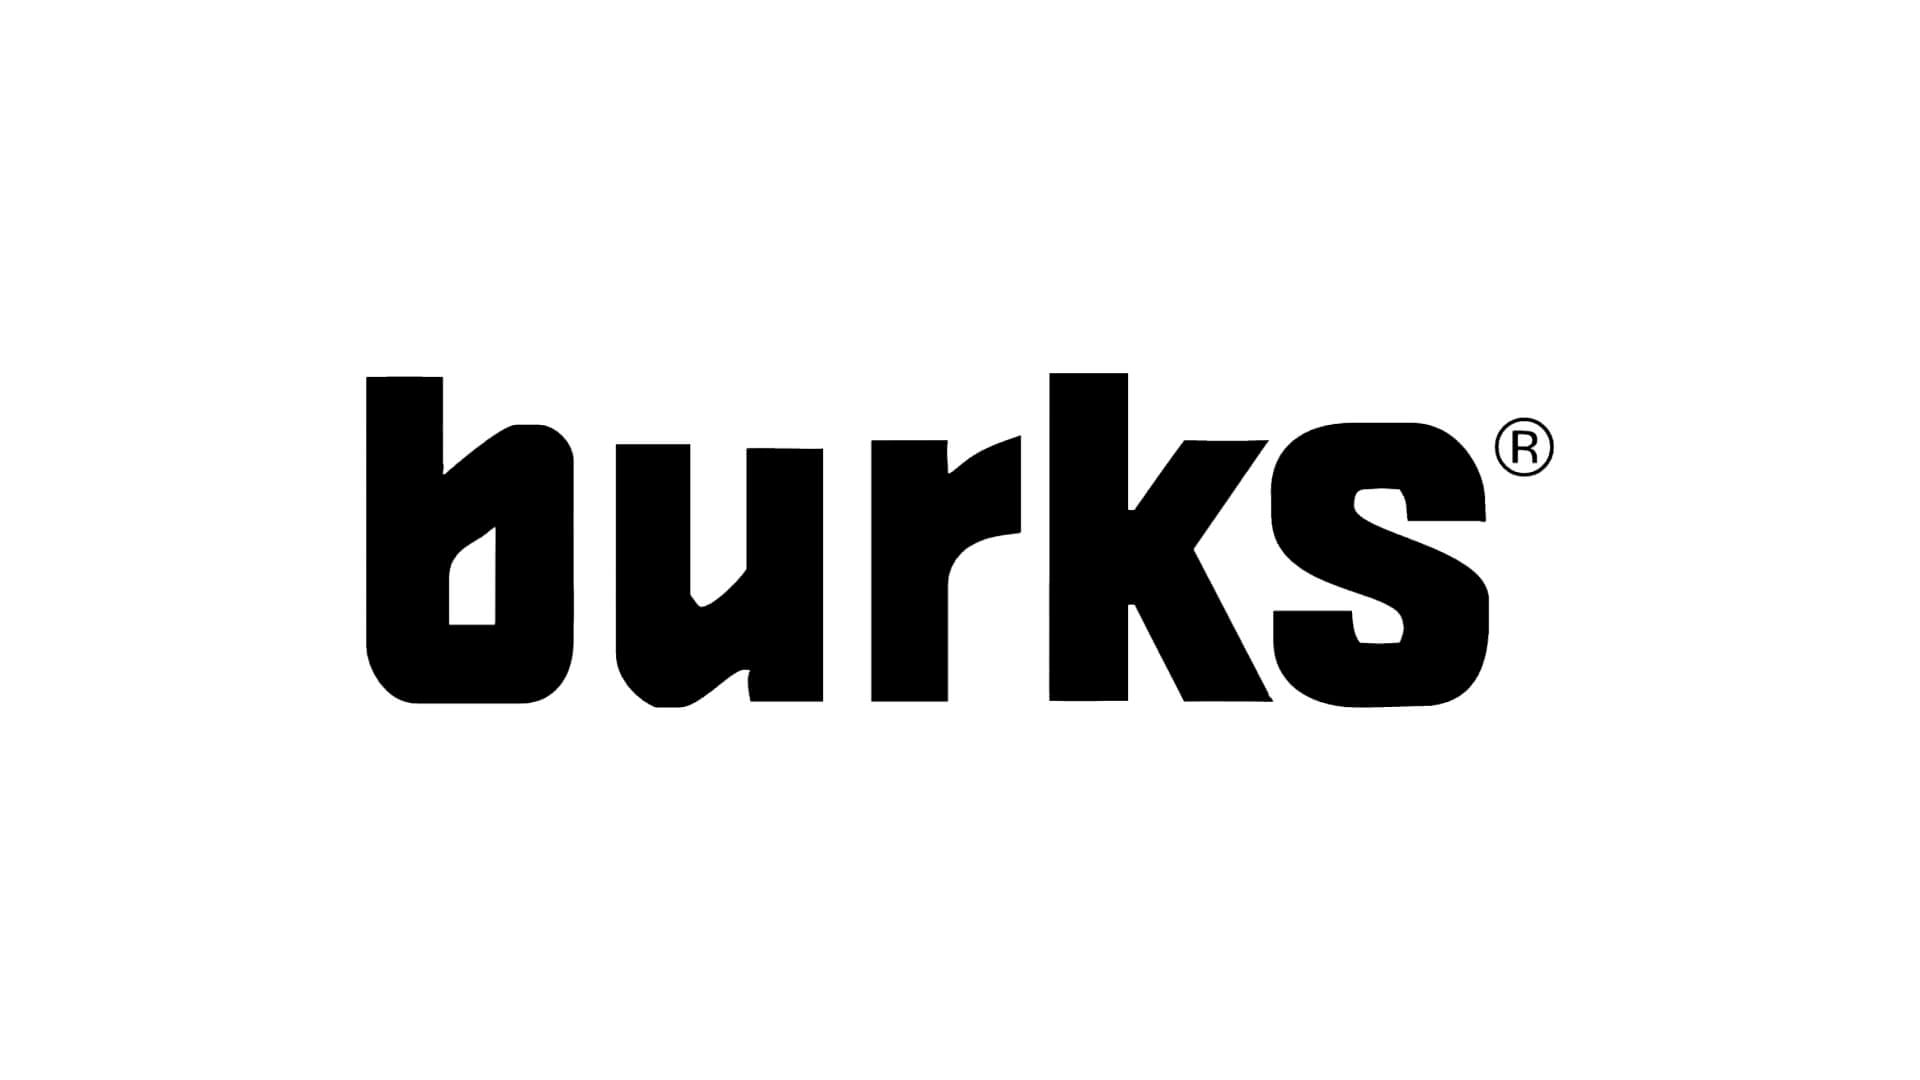 Burks logo in black